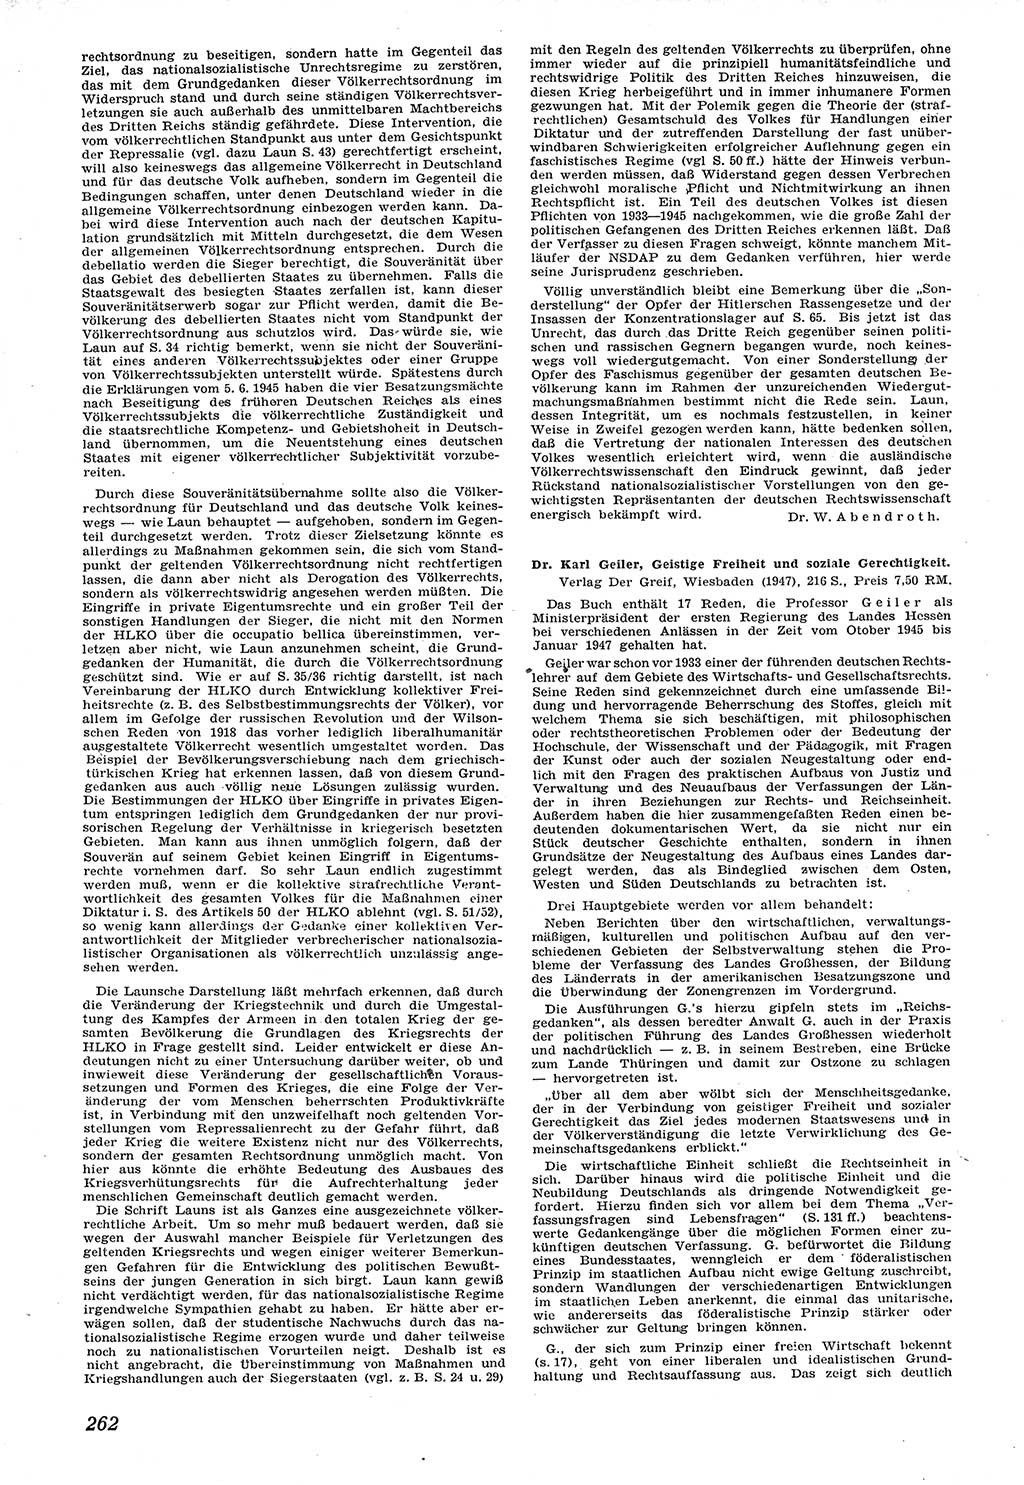 Neue Justiz (NJ), Zeitschrift für Recht und Rechtswissenschaft [Sowjetische Besatzungszone (SBZ) Deutschland], 1. Jahrgang 1947, Seite 262 (NJ SBZ Dtl. 1947, S. 262)